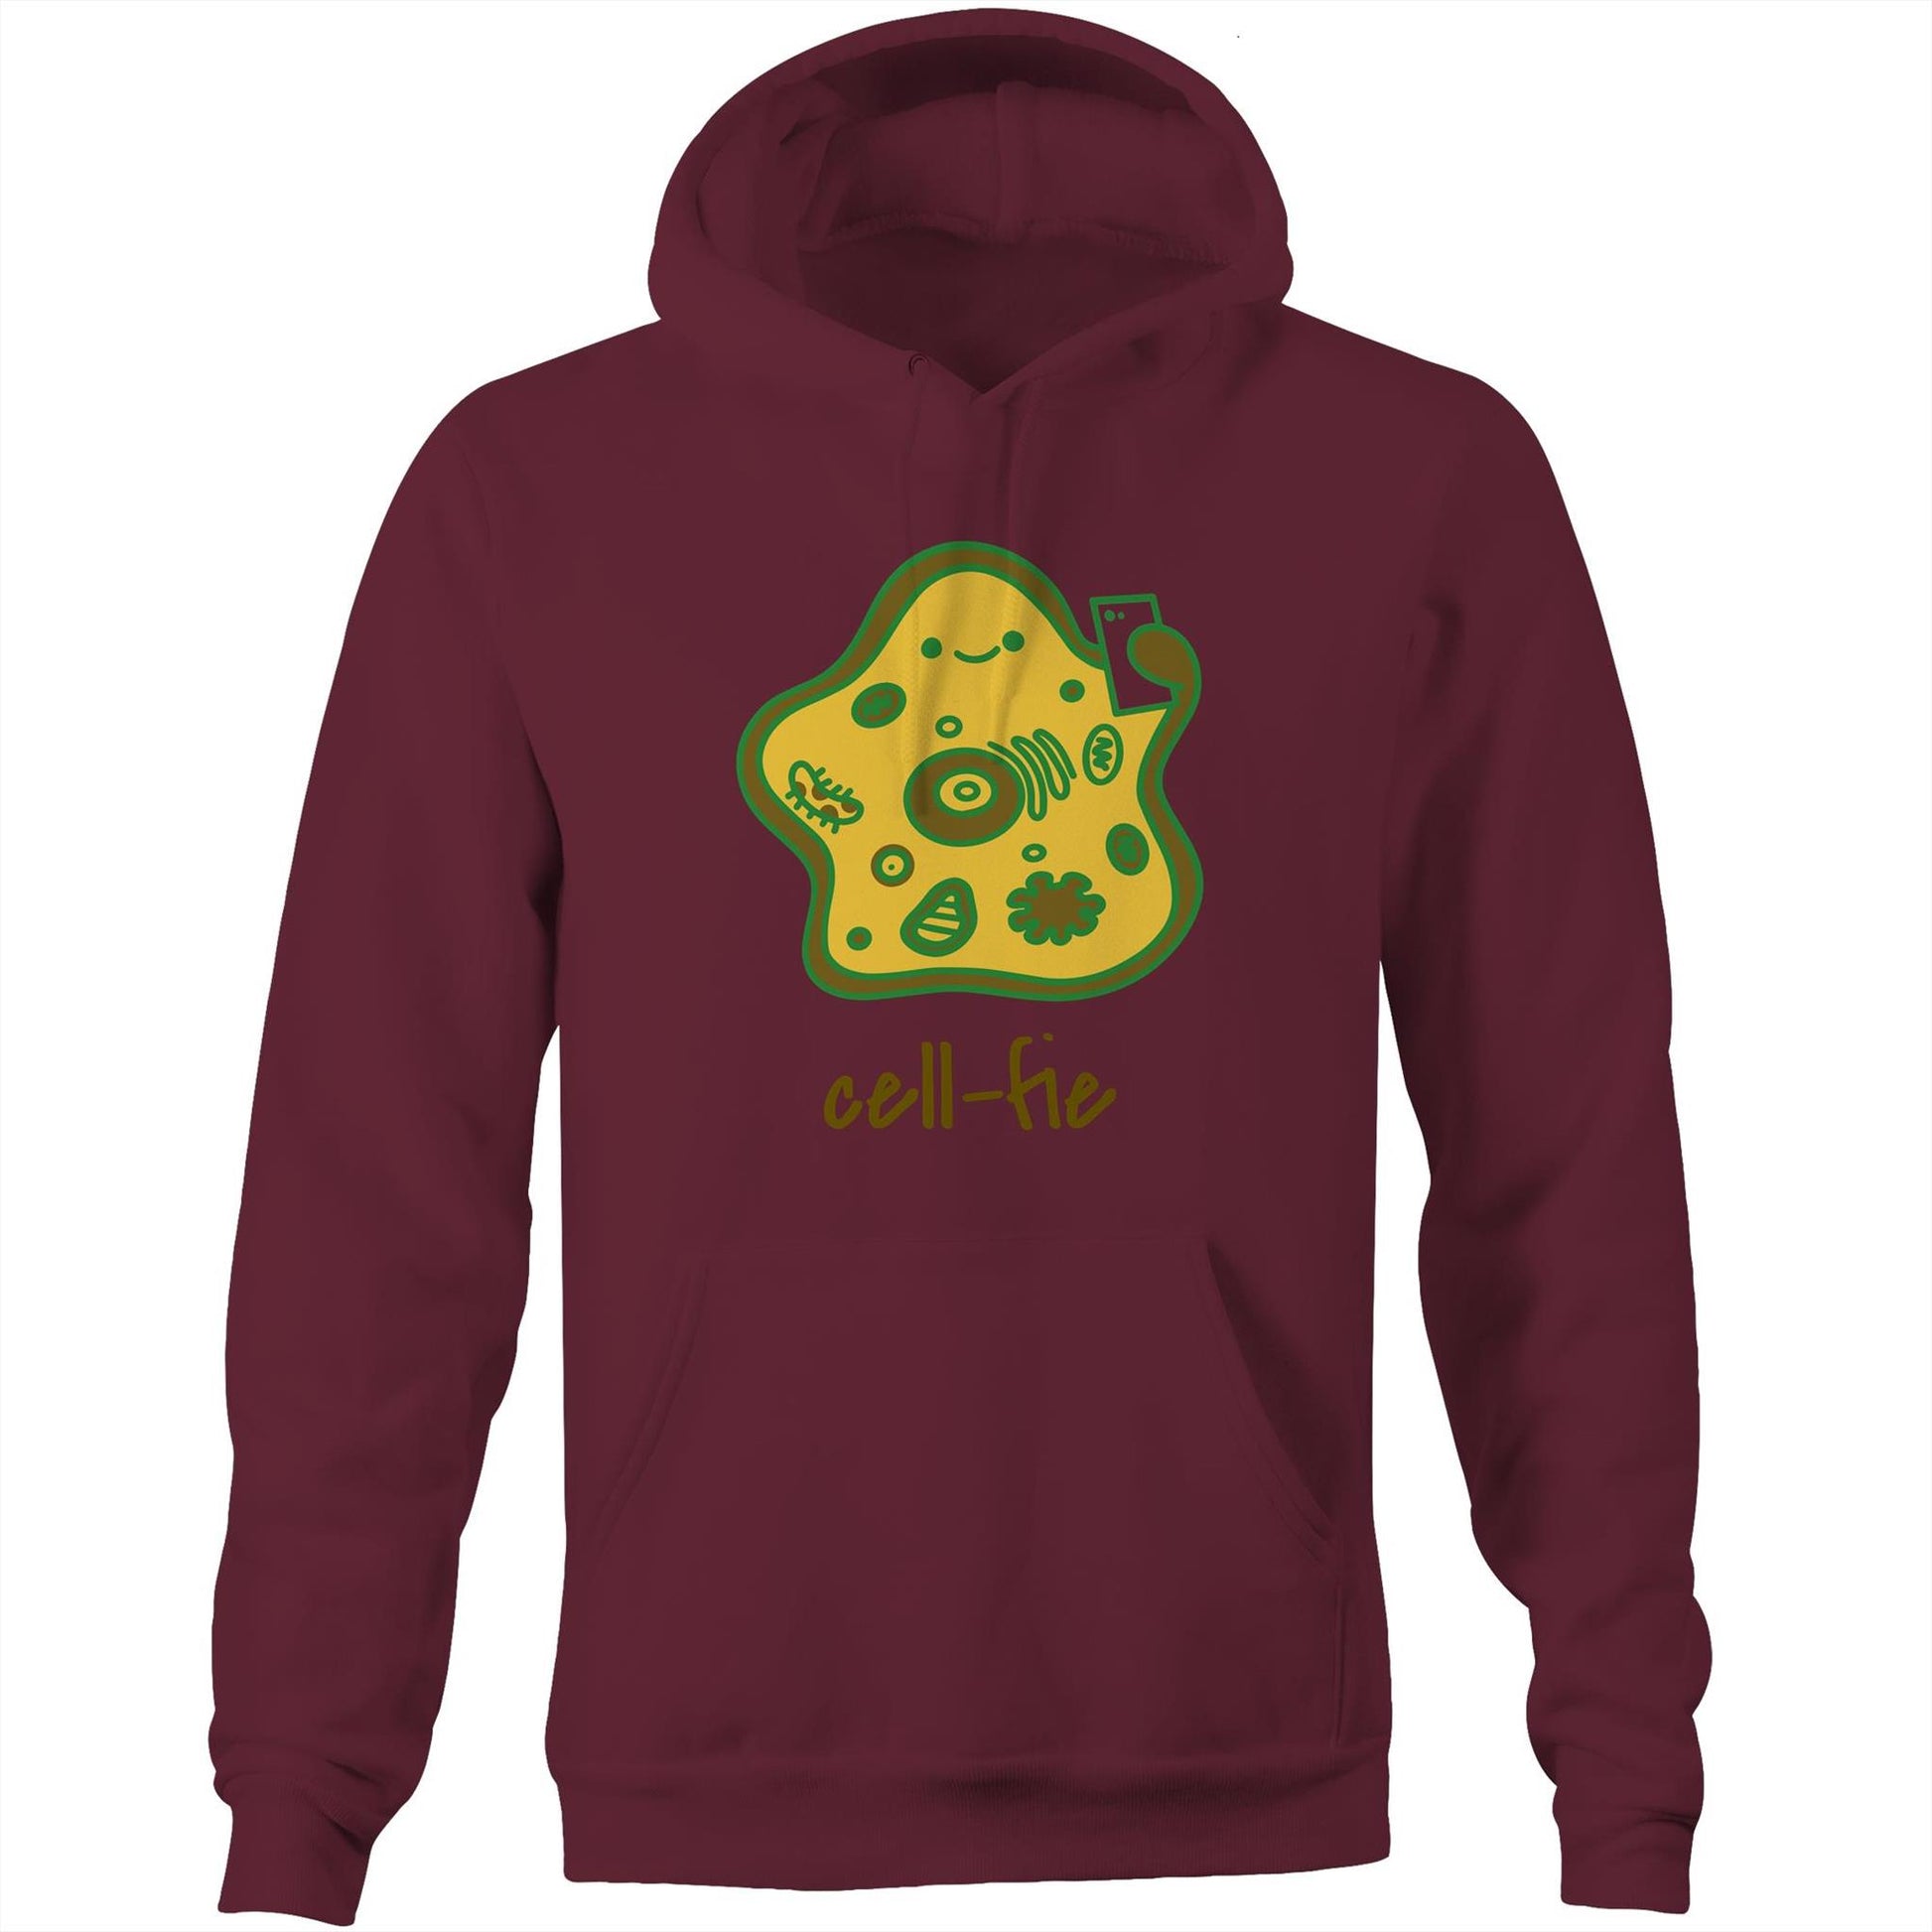 Cell-fie - Pocket Hoodie Sweatshirt Burgundy Hoodie Science